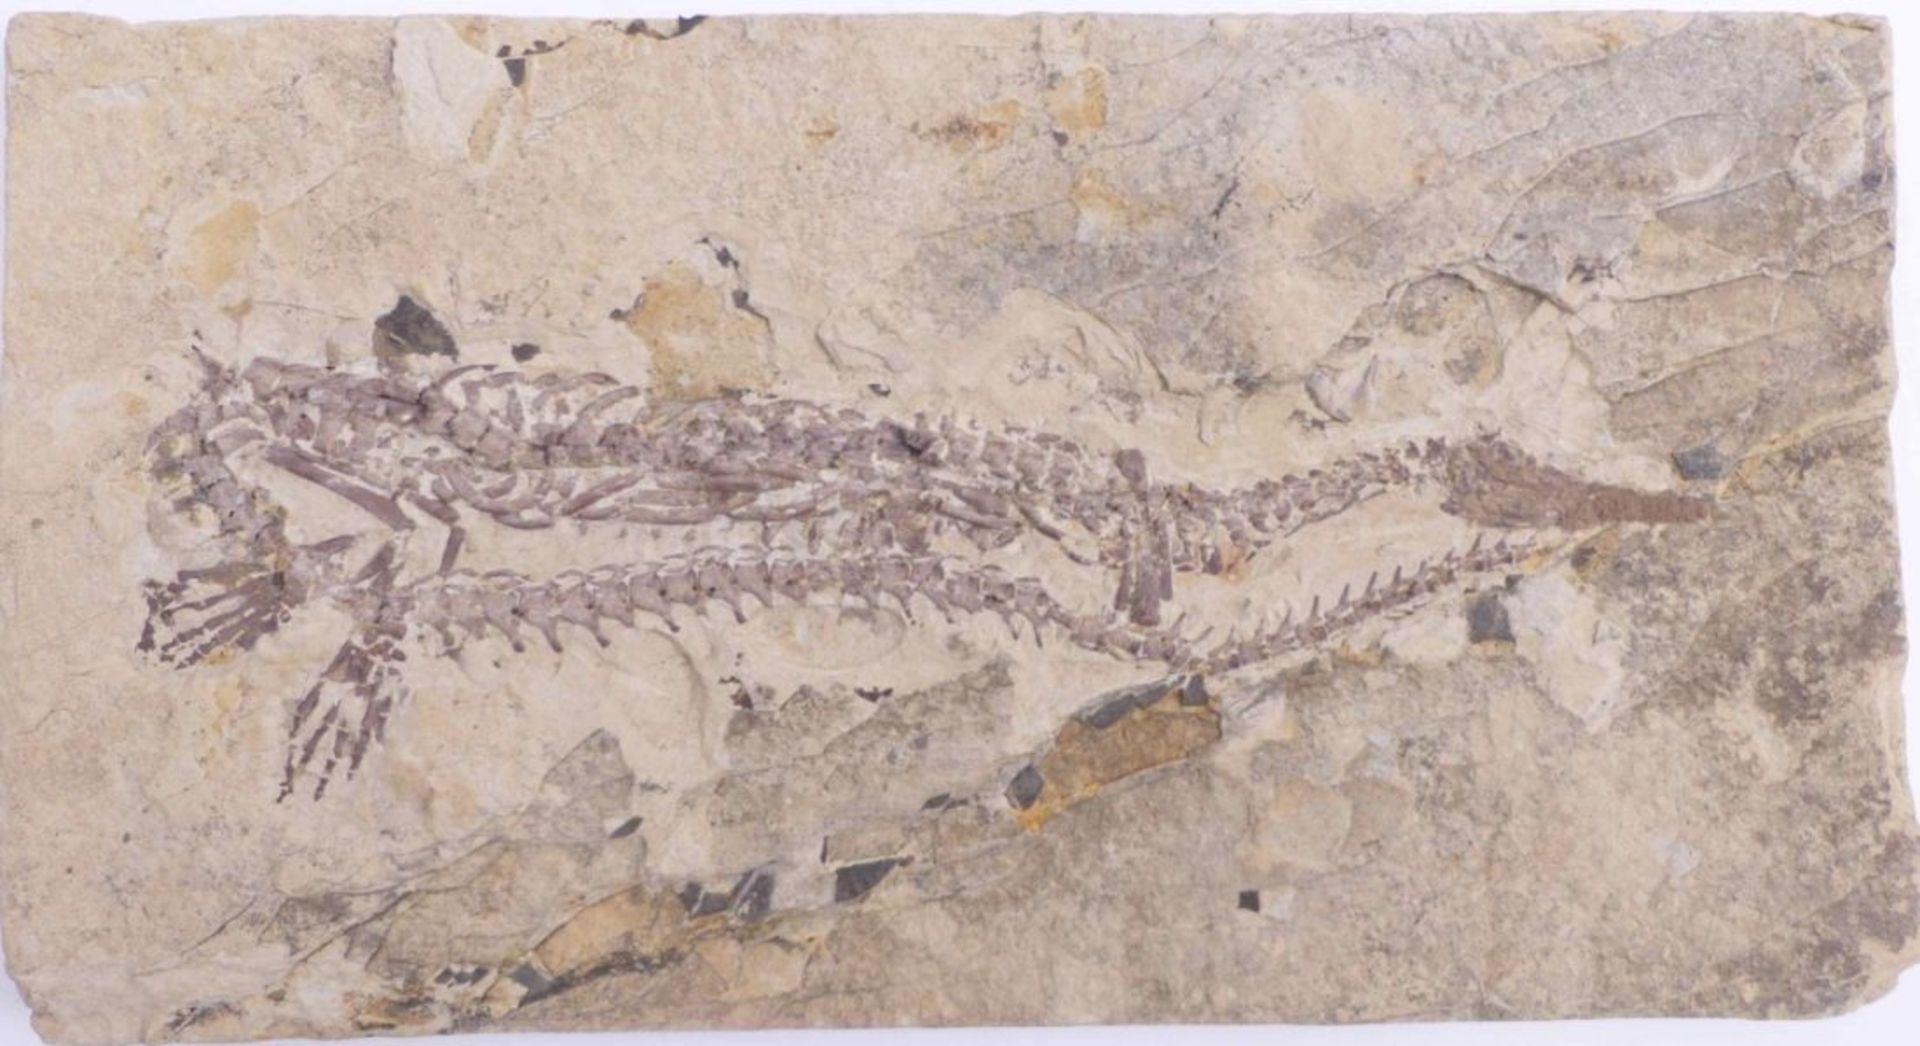 Fossil im Plattenkalk - Bild 2 aus 3